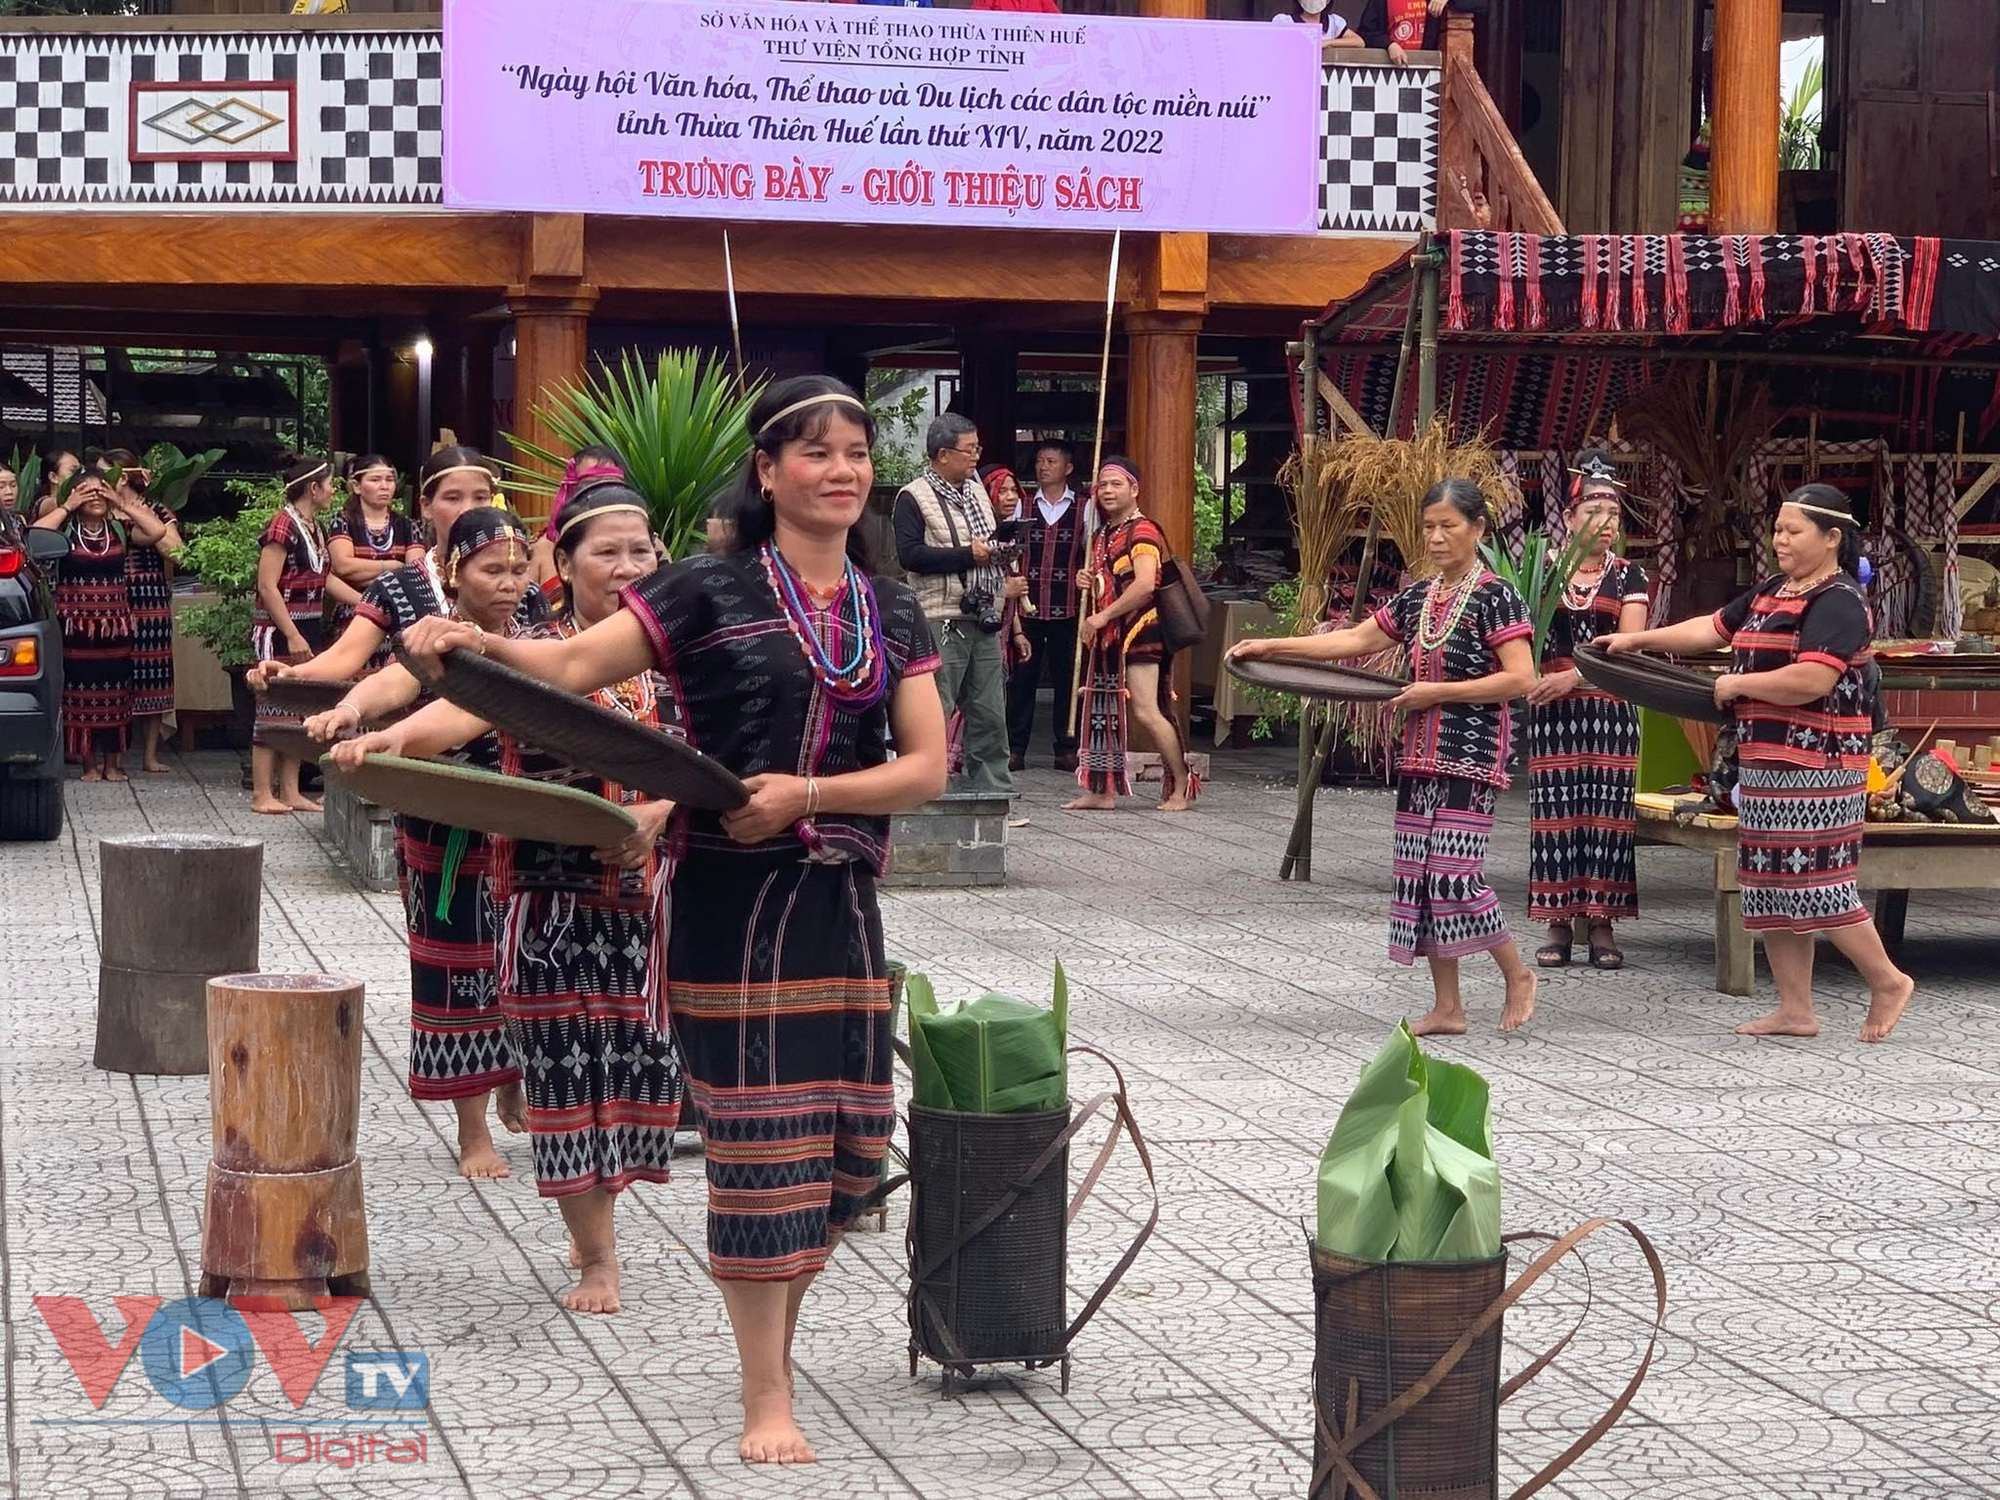 Đặc sắc 'Ngày hội Văn hóa, Thể thao và Du lịch các dân tộc miền núi' tỉnh Thừa Thiên Huế năm 2022 - Ảnh 2.